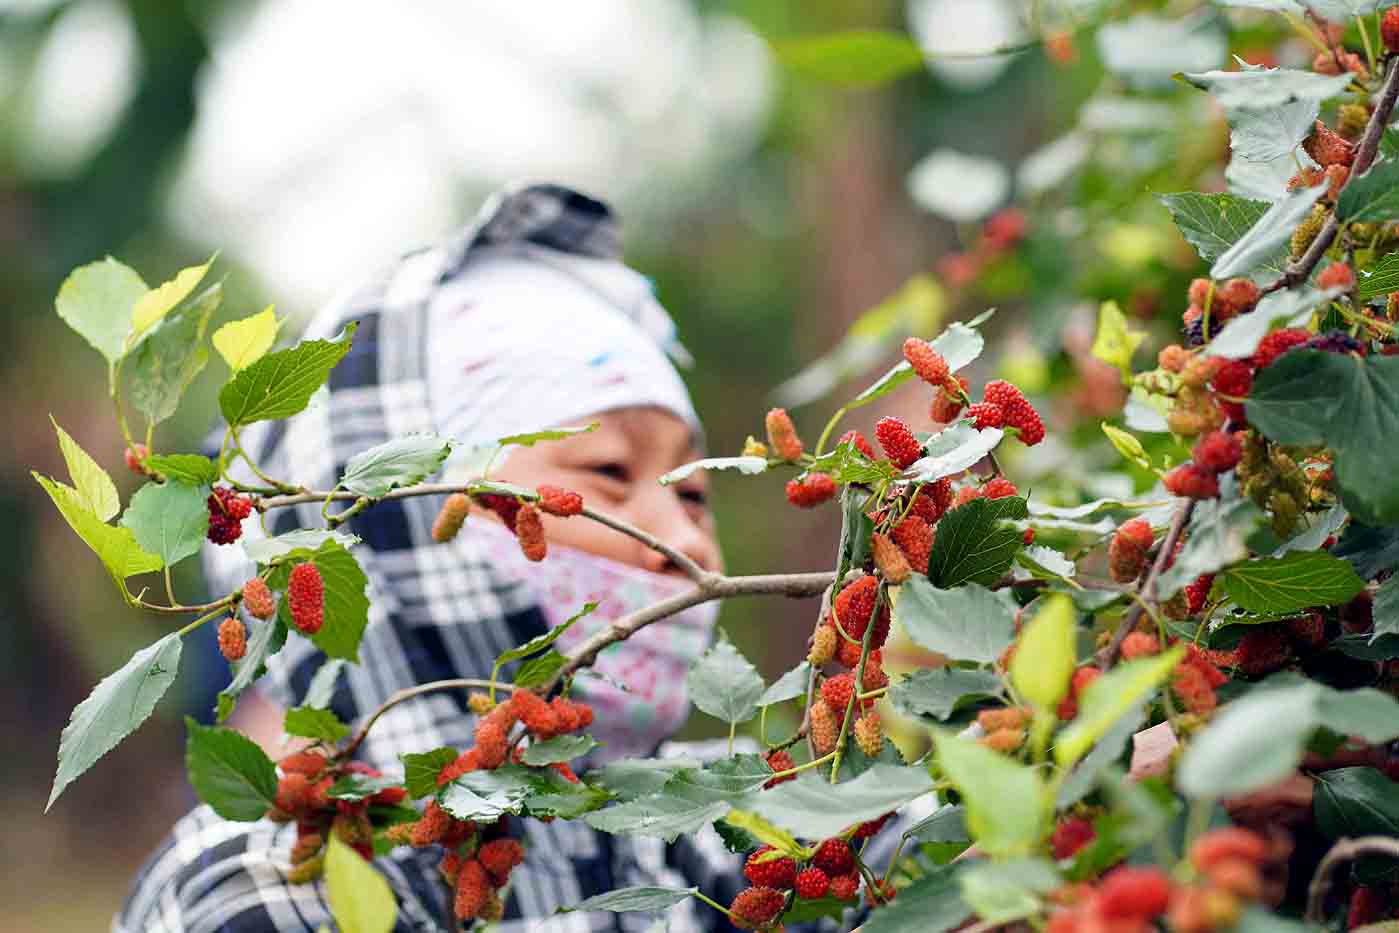 Xã Hiệp Thuận có khoảng 15 ha dâu tằm. Cây dâu được người dân đưa về trồng ở đất này khoảng 6 năm trước, hiệu quả kinh tế cao hơn so với trồng lúa.